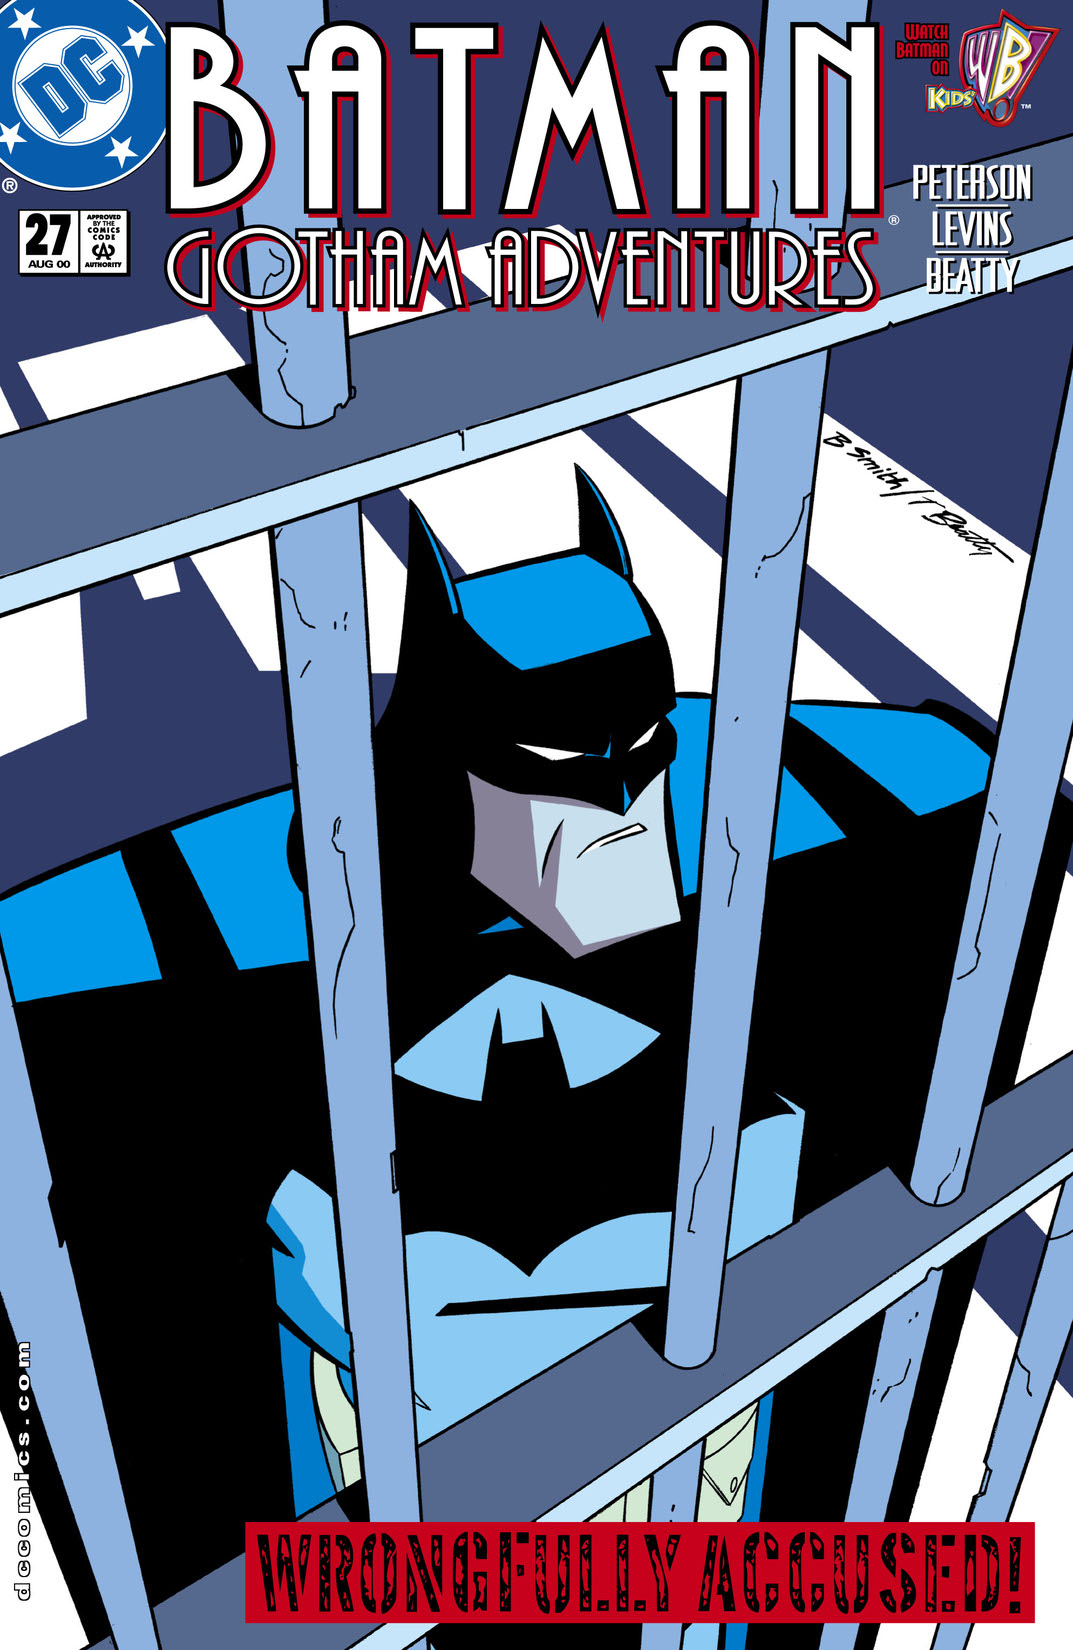 Batman: Gotham Adventures #27 preview images